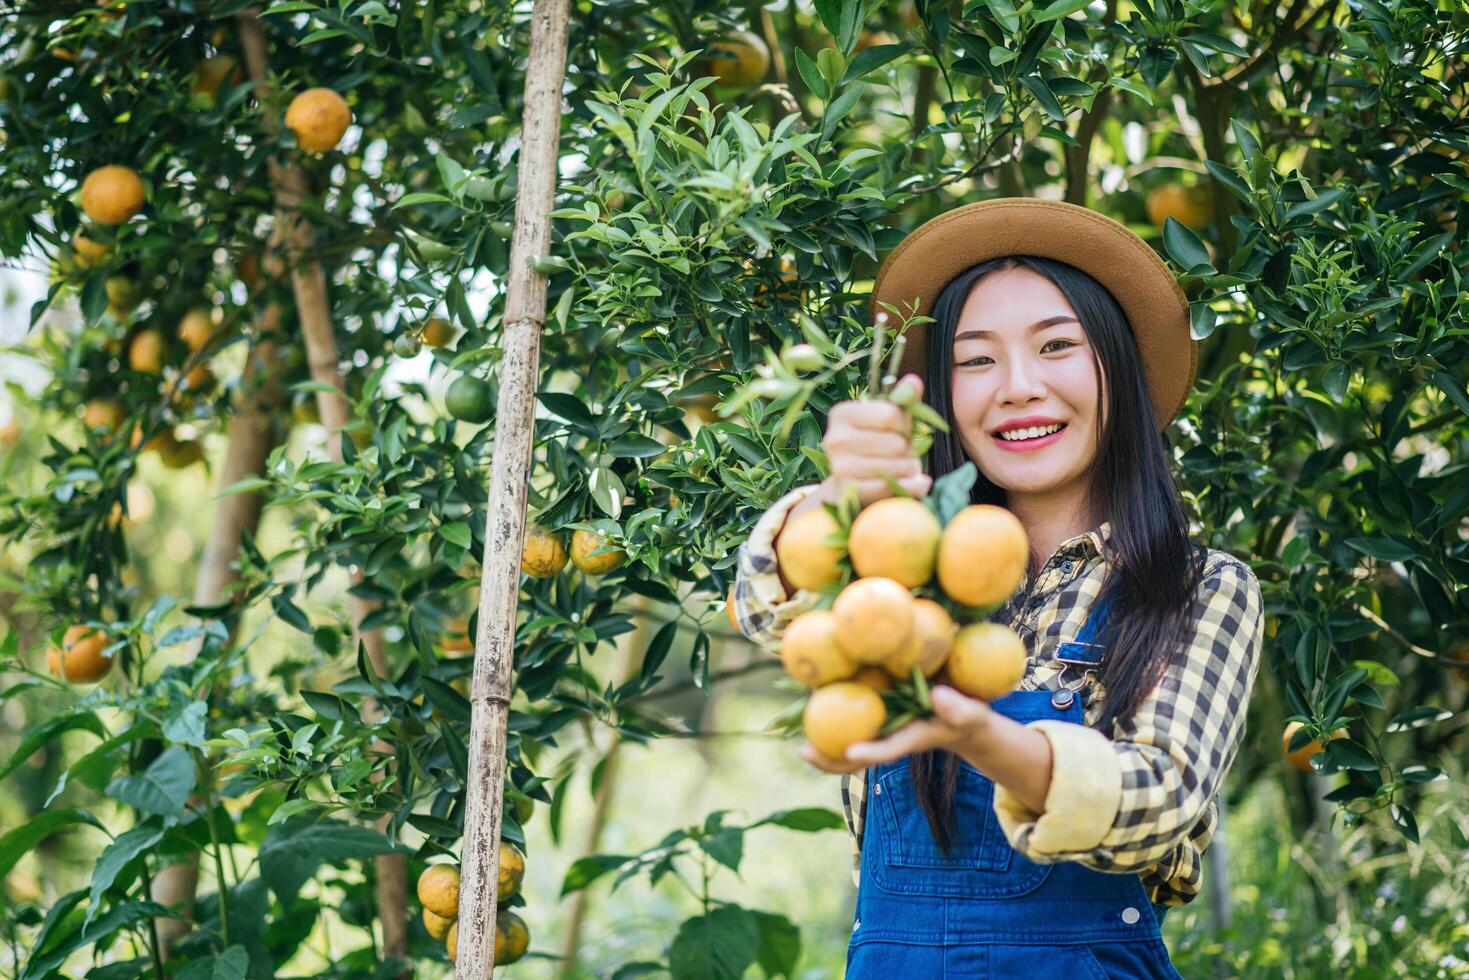 donna che raccoglie una piantagione di arance foto